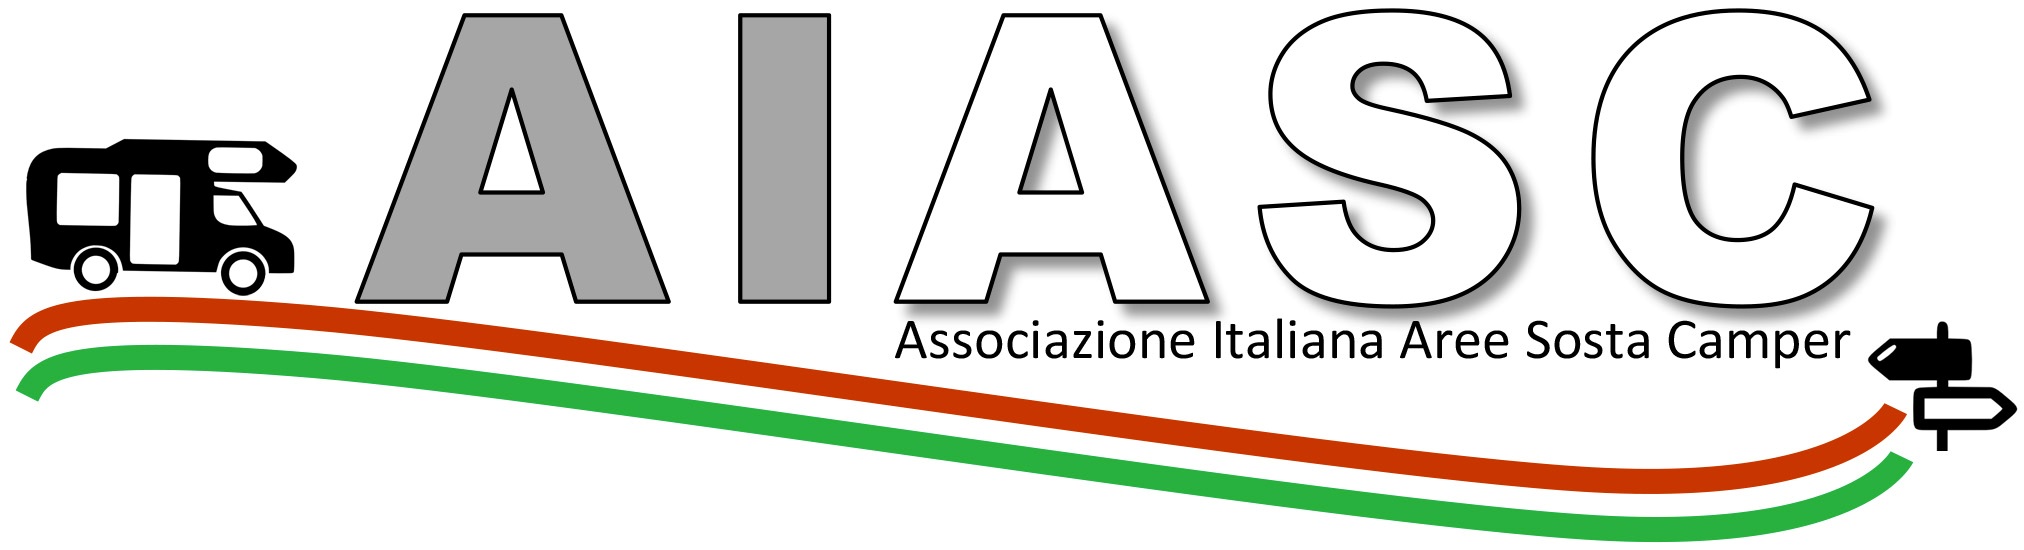 AIASC logo